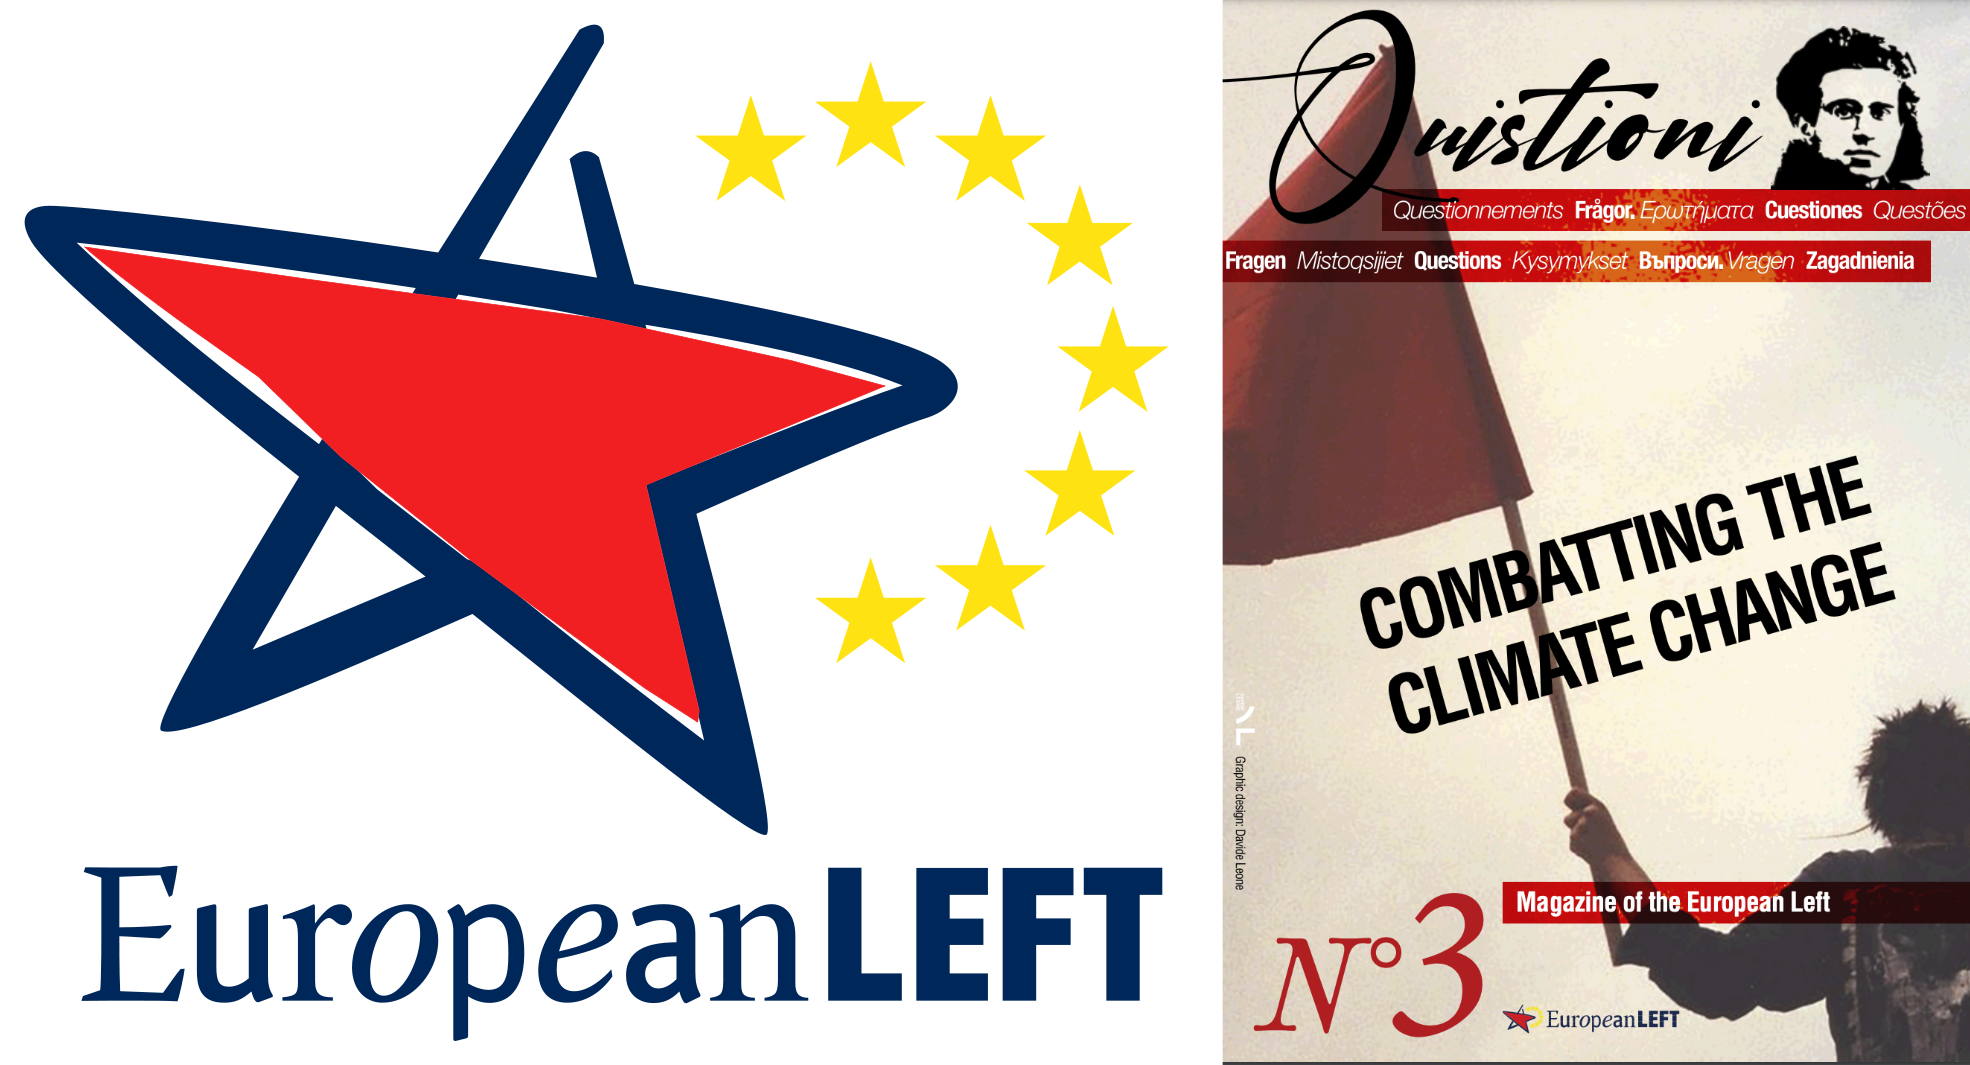 European Left & Quistioni